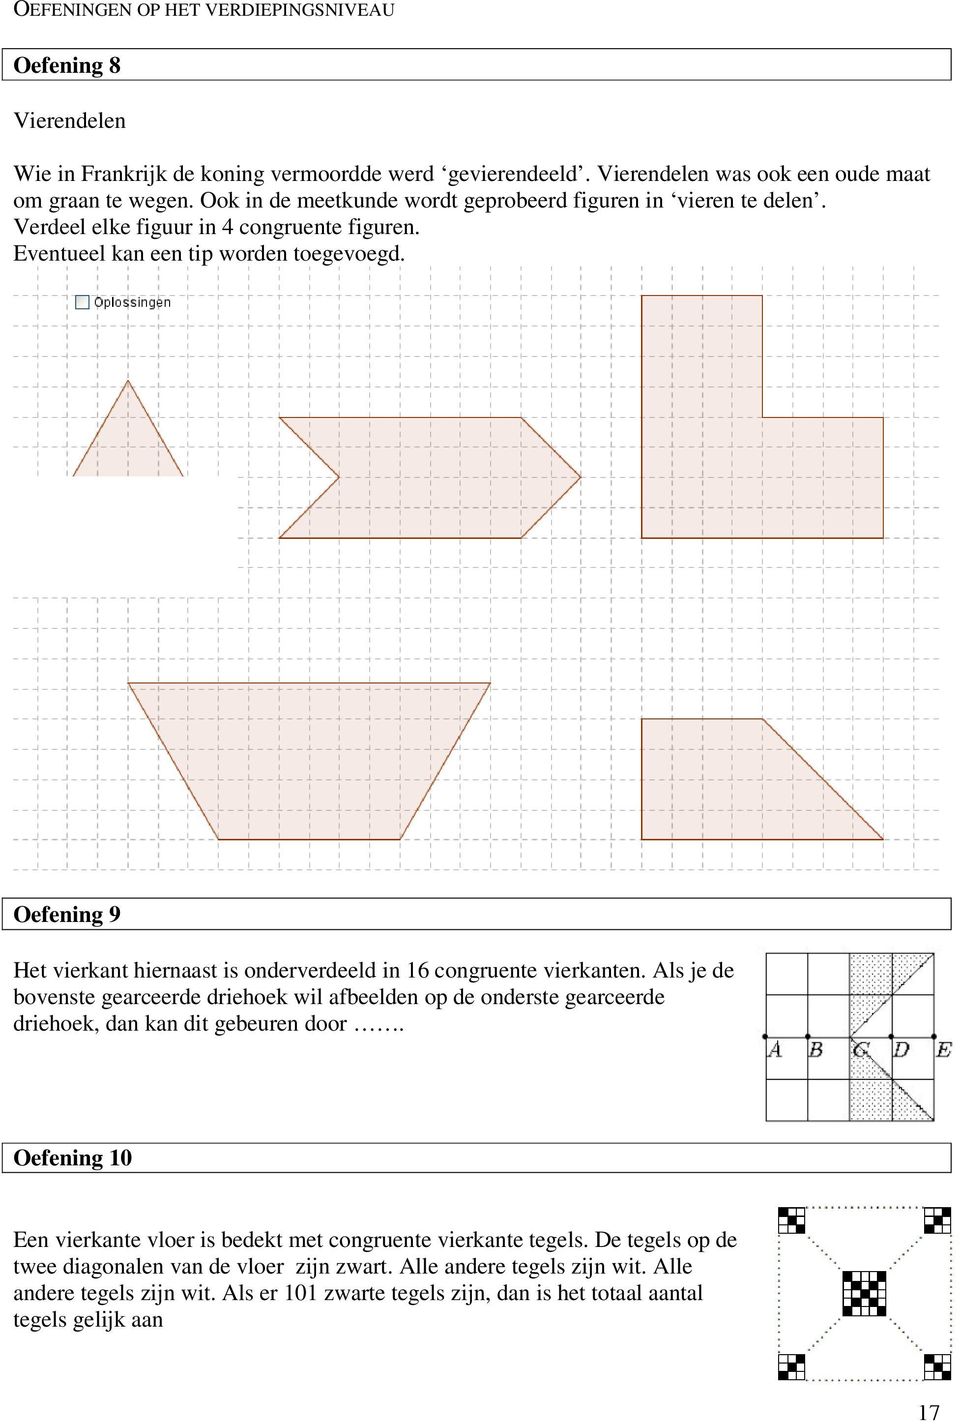 Oefening 9 Het vierkant hiernaast is onderverdeeld in 16 congruente vierkanten. Als je de bovenste gearceerde driehoek wil afbeelden op de onderste gearceerde driehoek, dan kan dit gebeuren door.